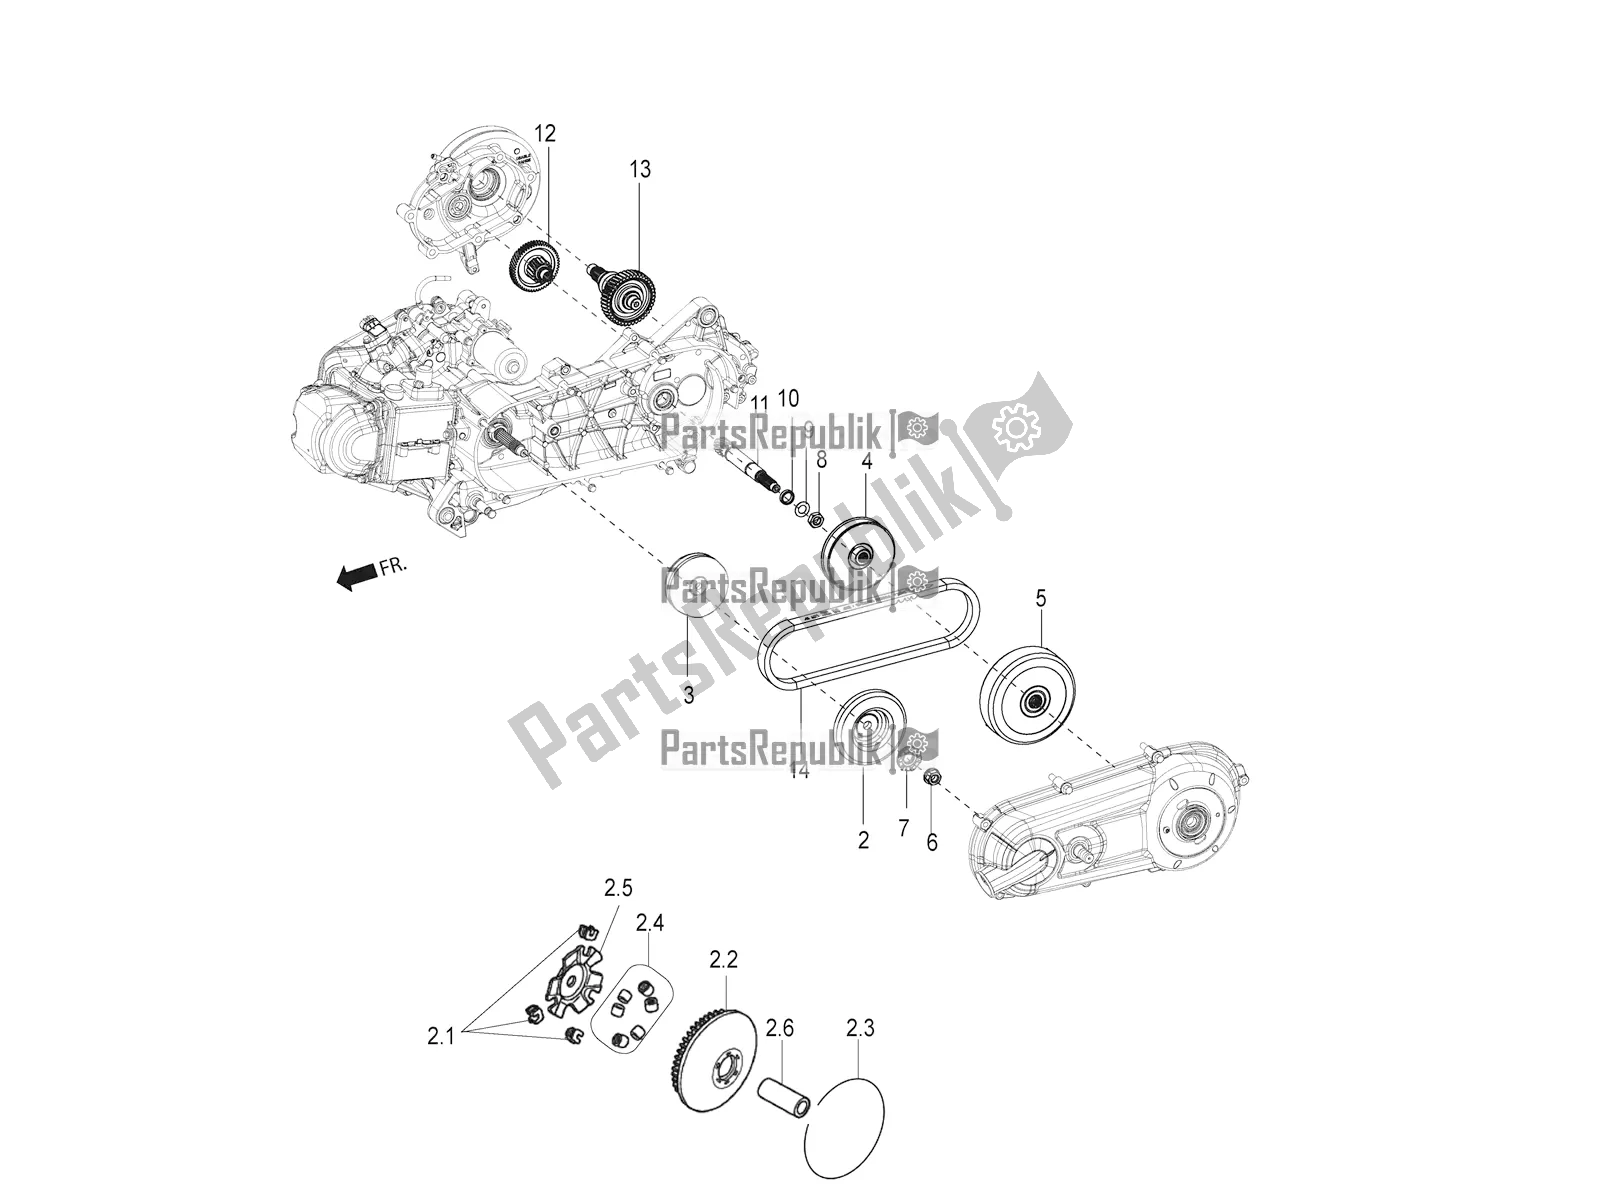 Alle onderdelen voor de Transmissie-koppeling van de Aprilia SR Motard 150 ABS Racer Carb. Latam 2018